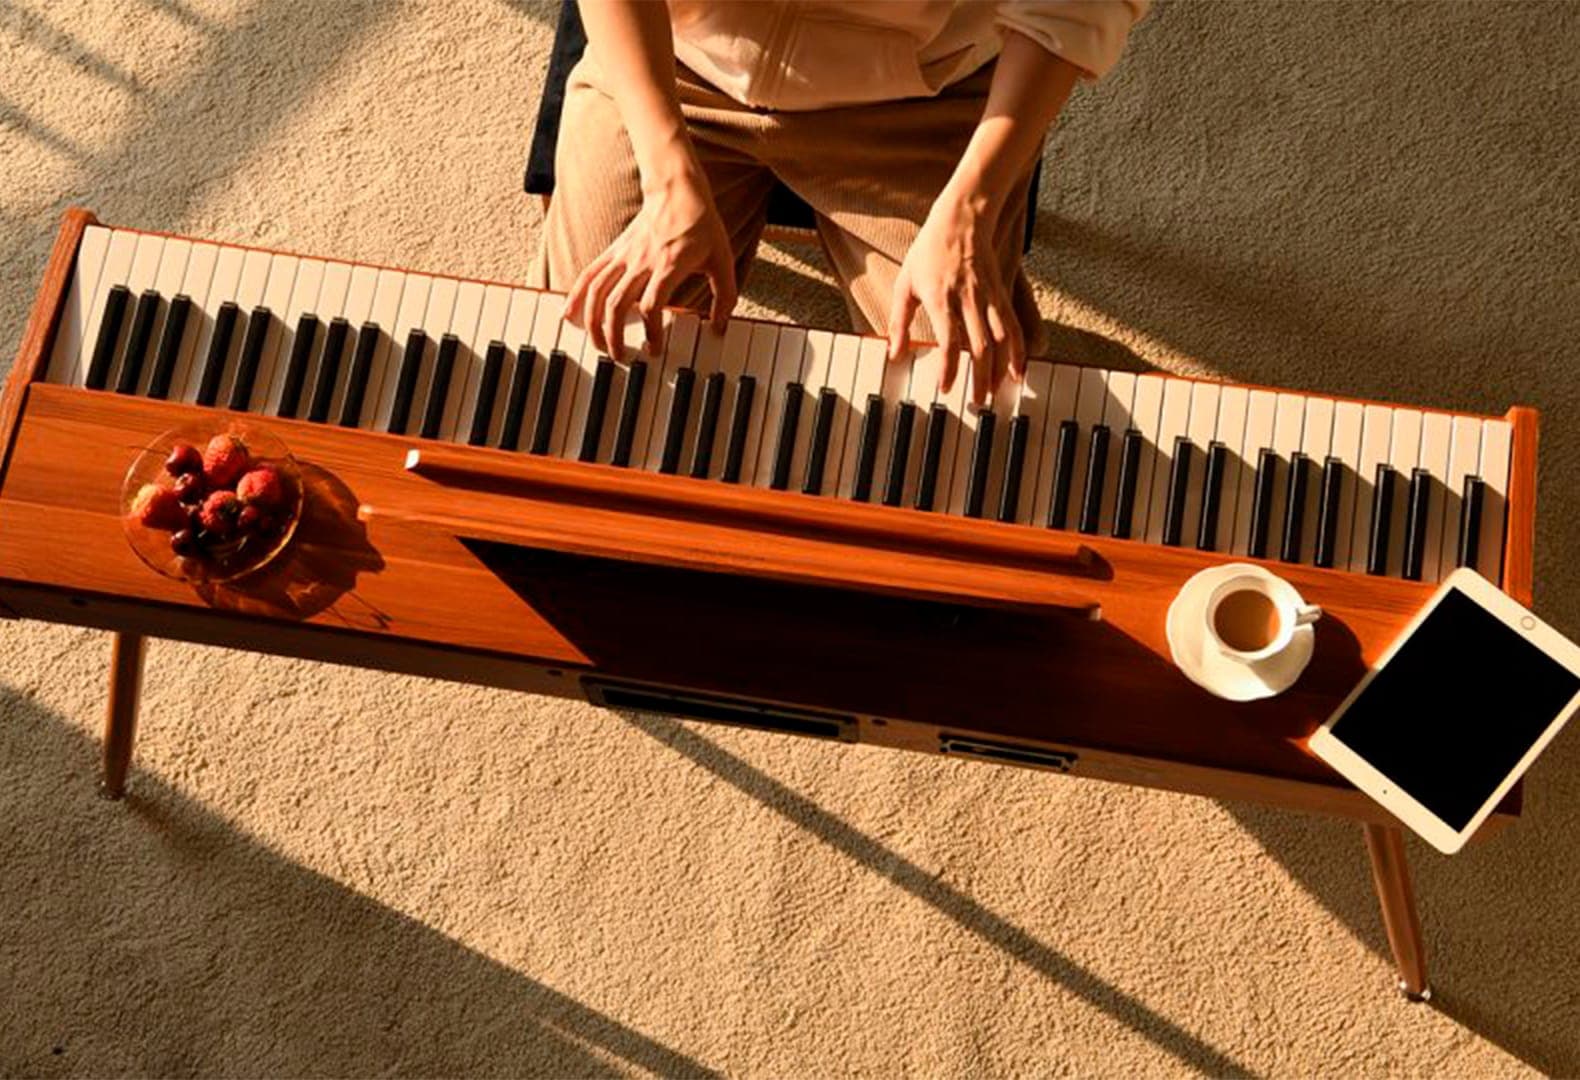 Музыкальные поделки своими руками: 10 идей музыкальных инструментов своими руками